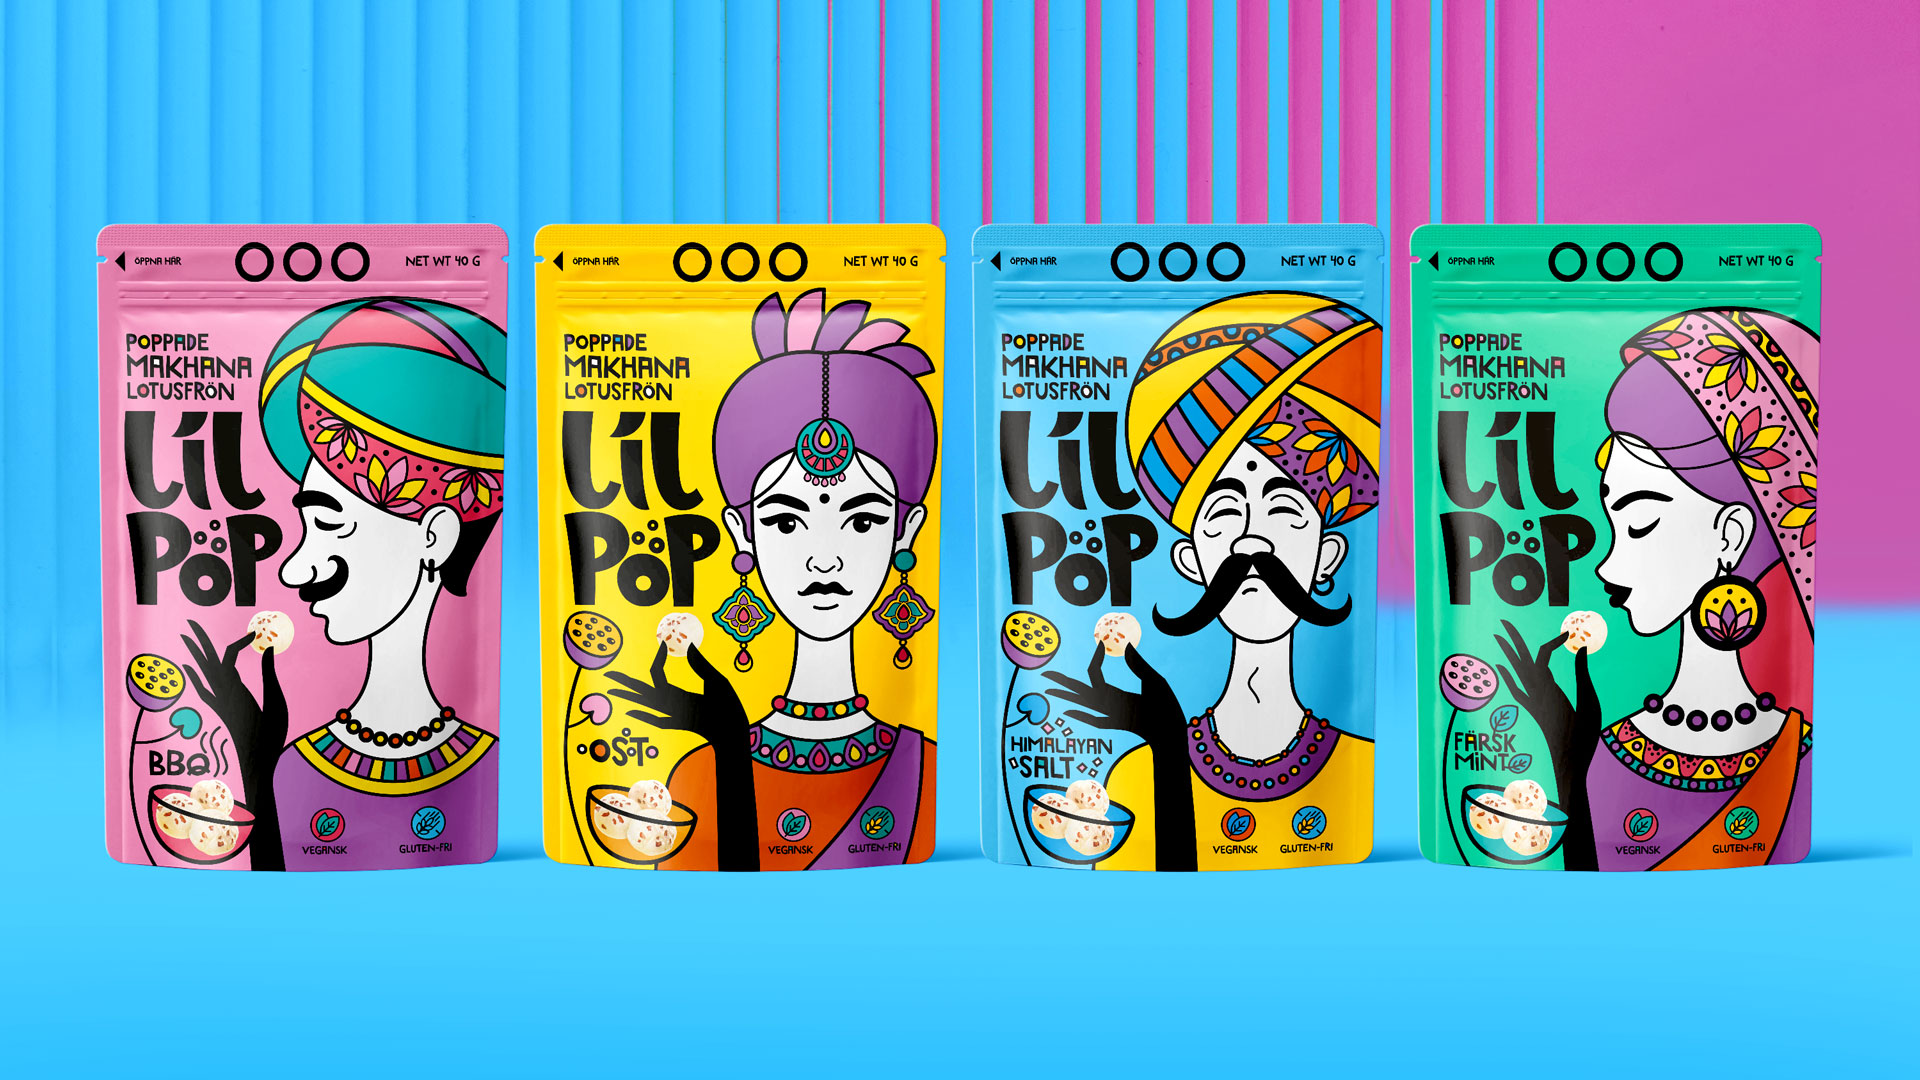 Дизайн упаковки LilPop продуктовая линейка